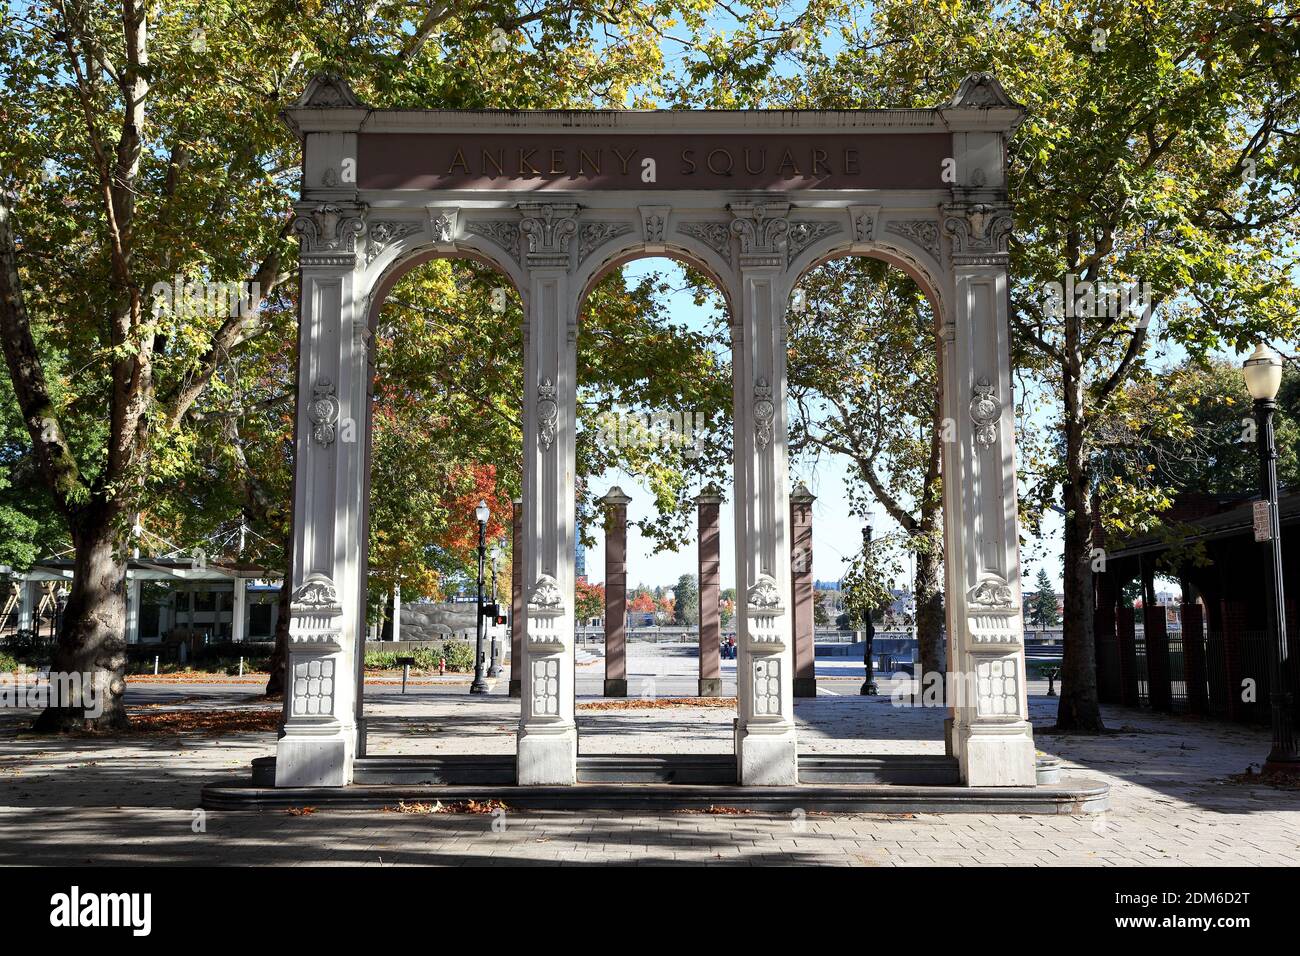 Portland, Oregon: Ankeny Square nel centro di Portland Foto Stock